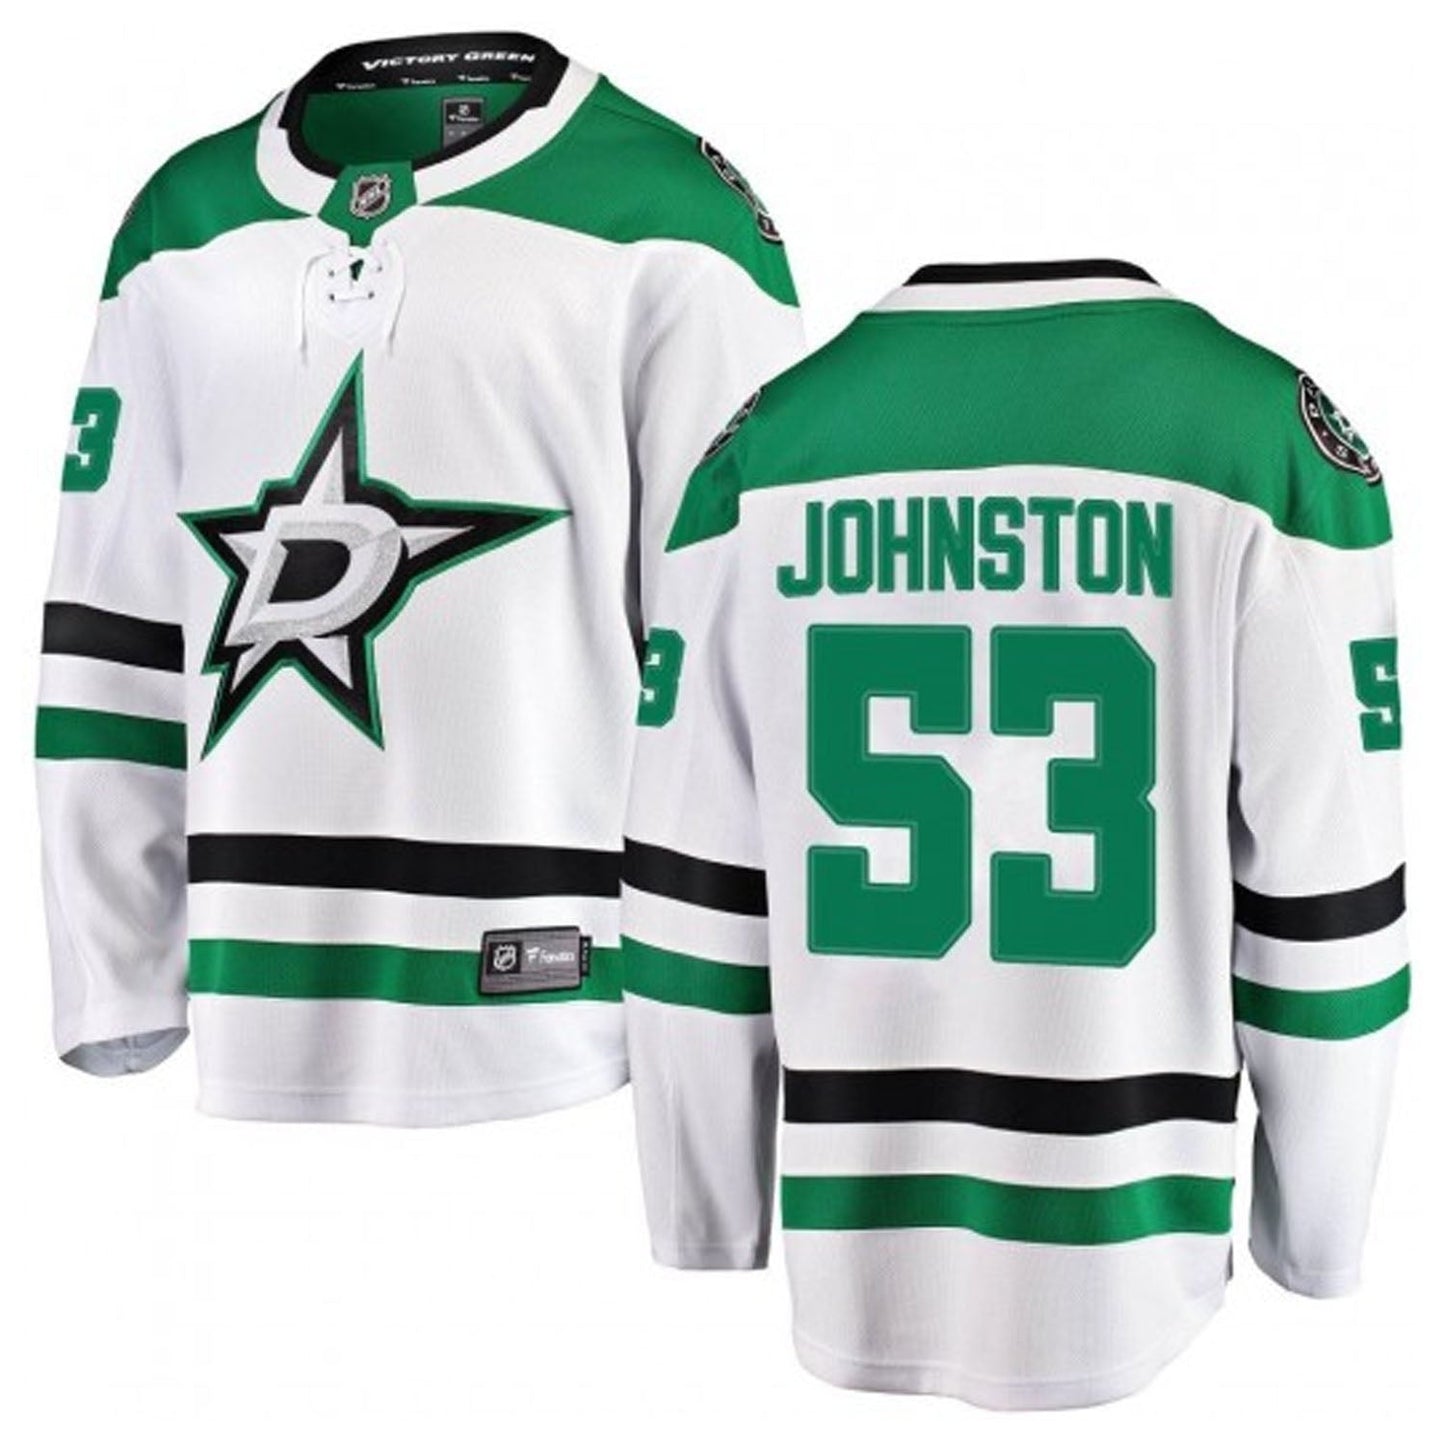 NHL Wyatt Johnston Dallas Stars 53 Jersey